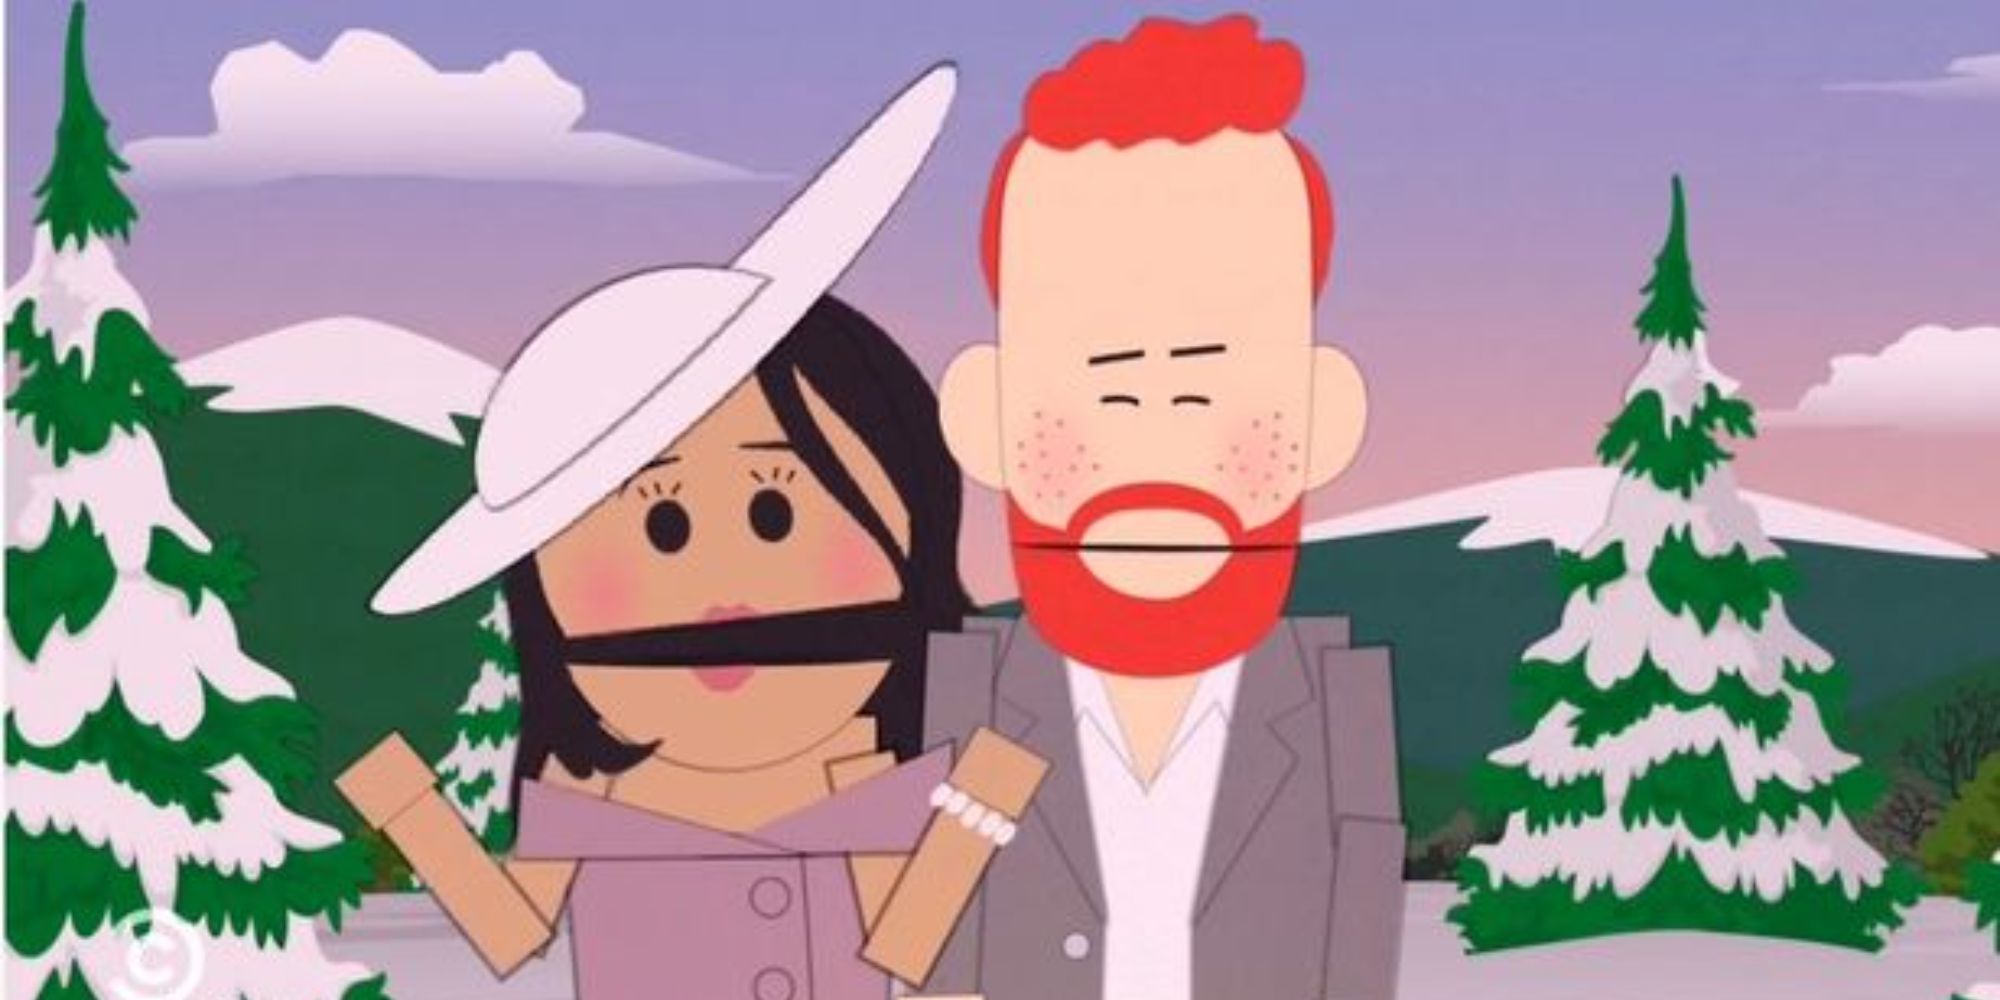 Canadian princes and princesses come to South Park